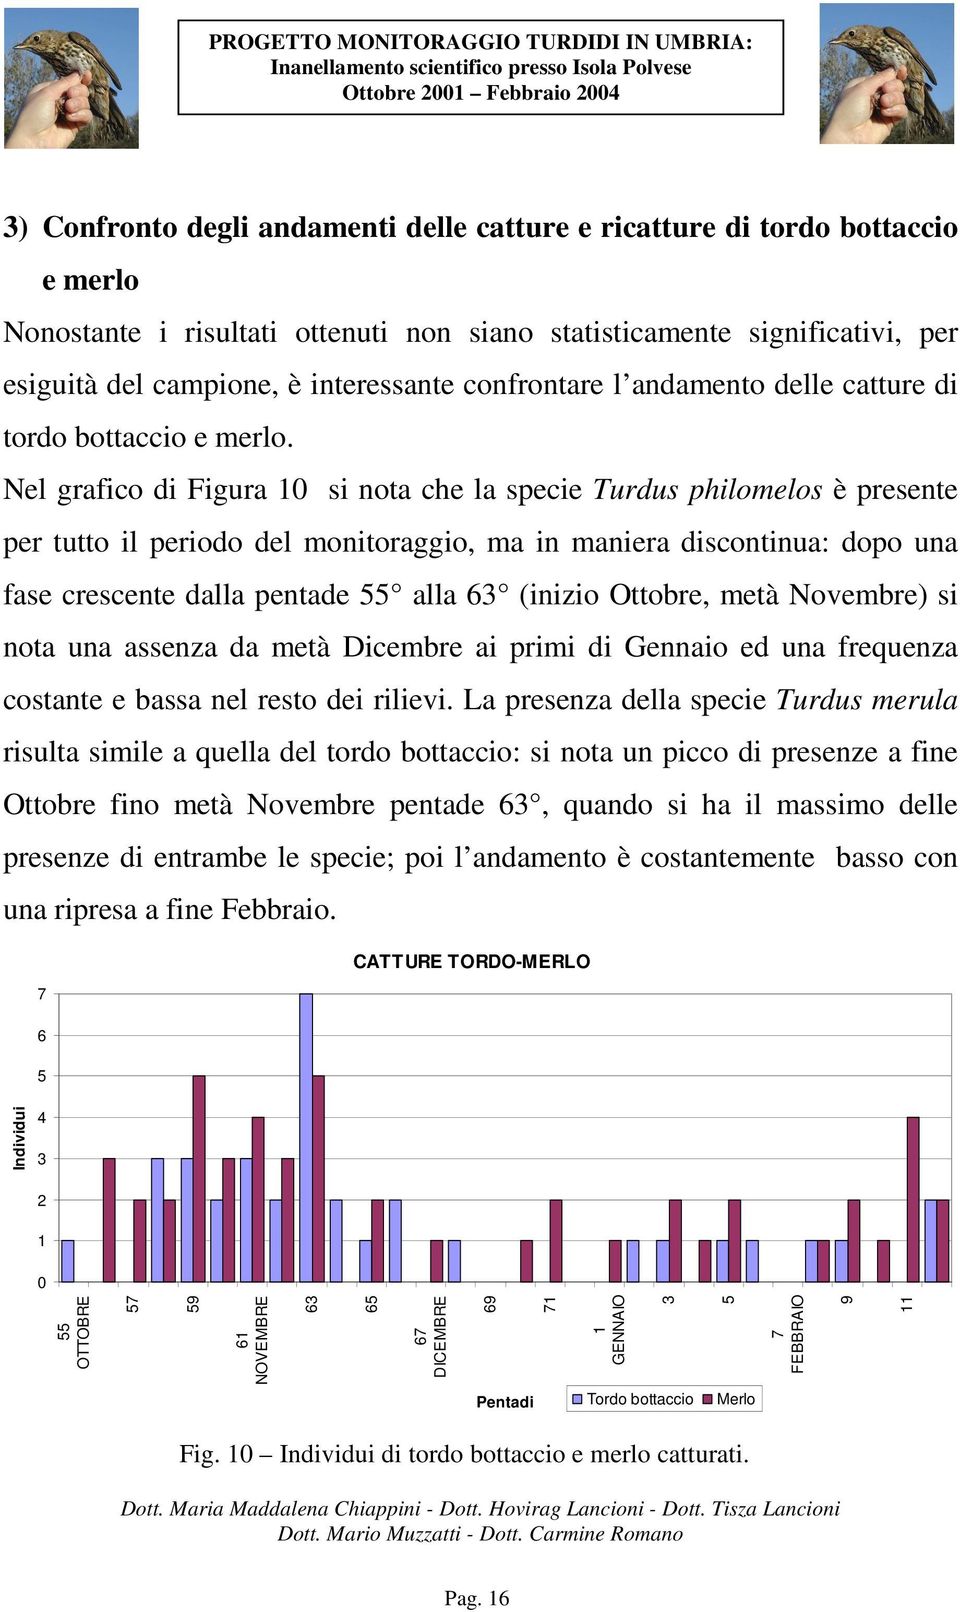 Nel grafico di Figura 0 si nota che la specie Turdus philomelos è presente per tutto il periodo del monitoraggio, ma in maniera discontinua: dopo una fase crescente dalla pentade alla 6 (inizio